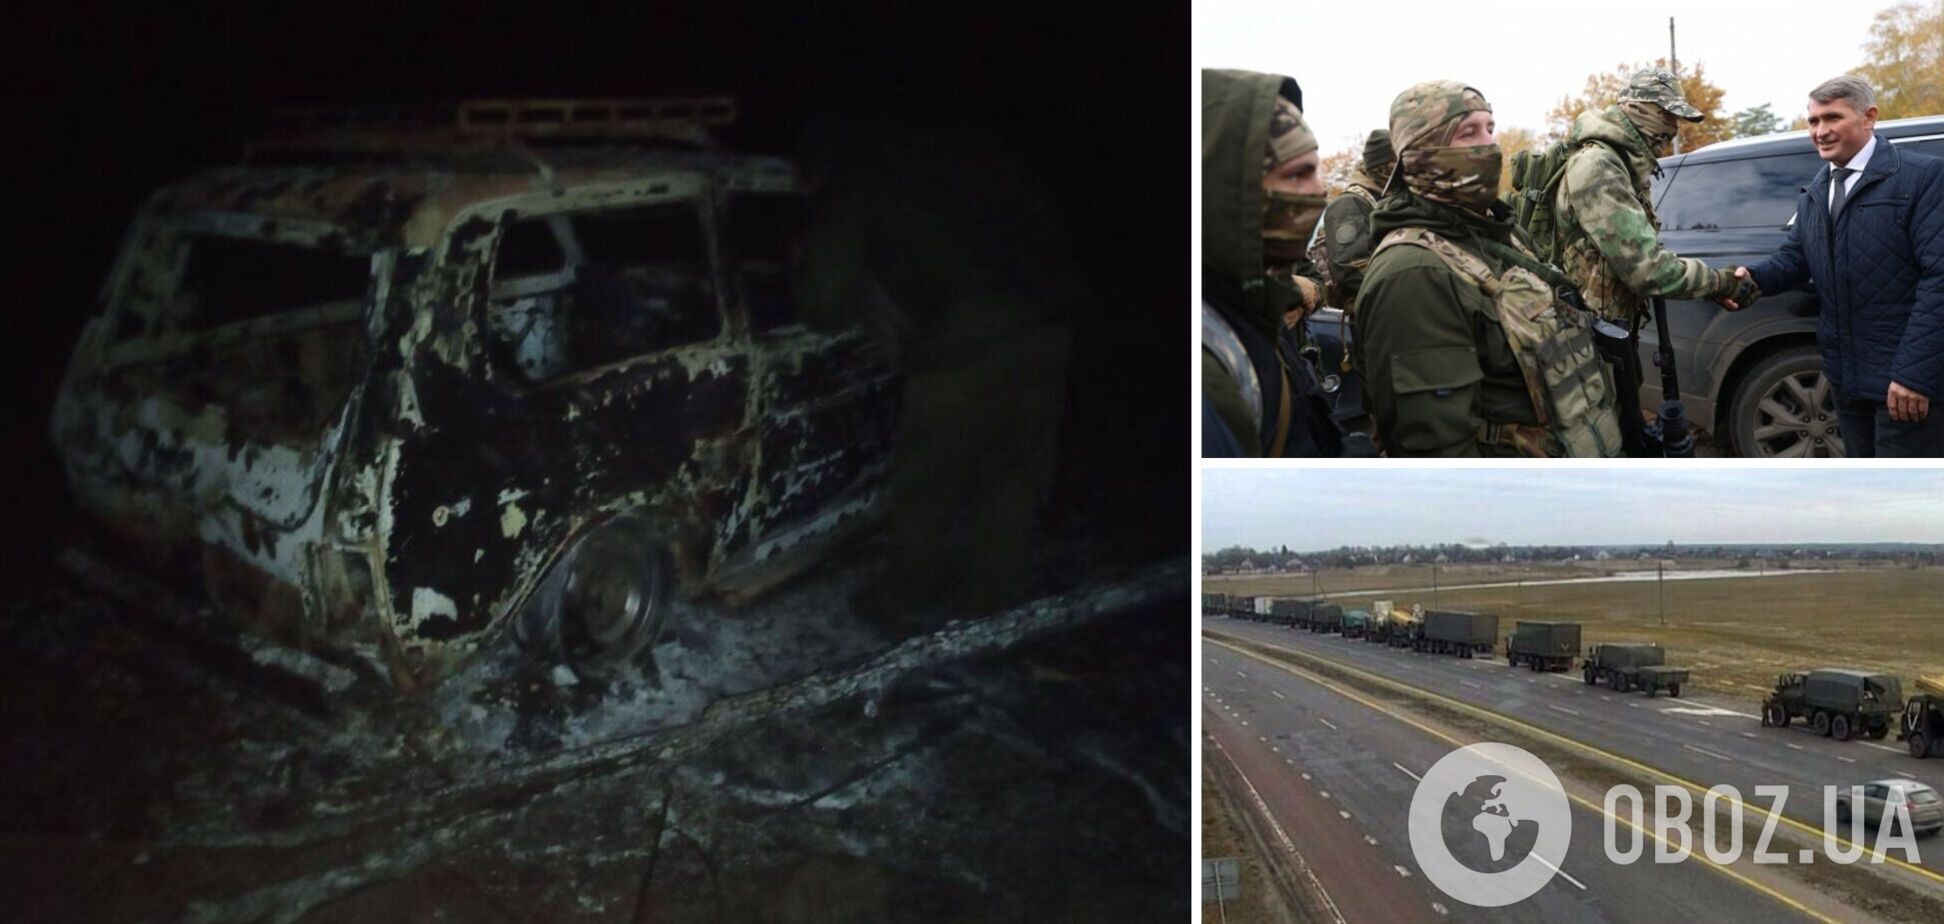 Працювали HIMARS: в Україні розгромили 'мобіків' із Чувашії, втрати сягають 120 осіб. Фото і відео